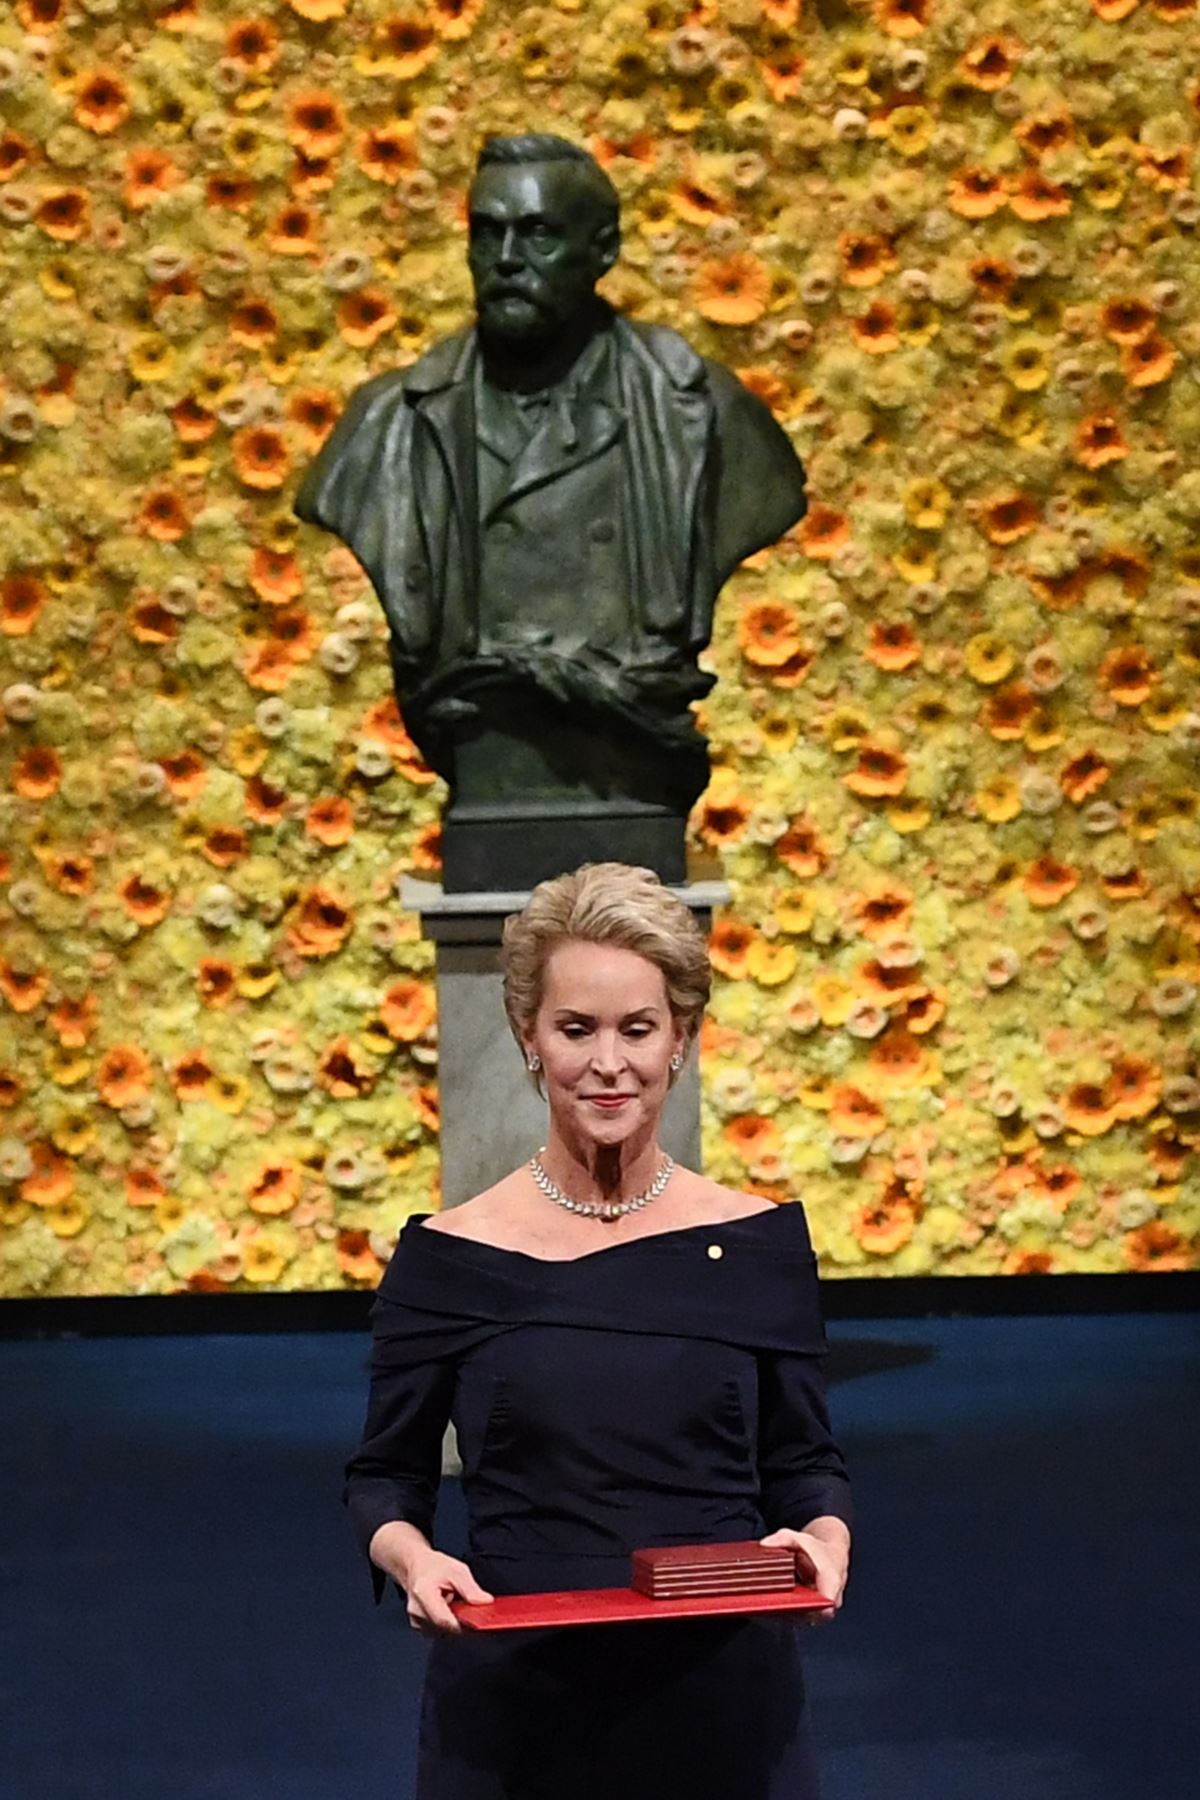 Co-galardonado con el Premio Nobel de Química de 2018, el ingeniero químico estadounidense Frances Arnold, posa con su Premio Nobel durante la ceremonia de entrega de premios de 2018 el 10 de diciembre de 2018 en la Sala de Conciertos de Estocolmo, Suecia.AFP